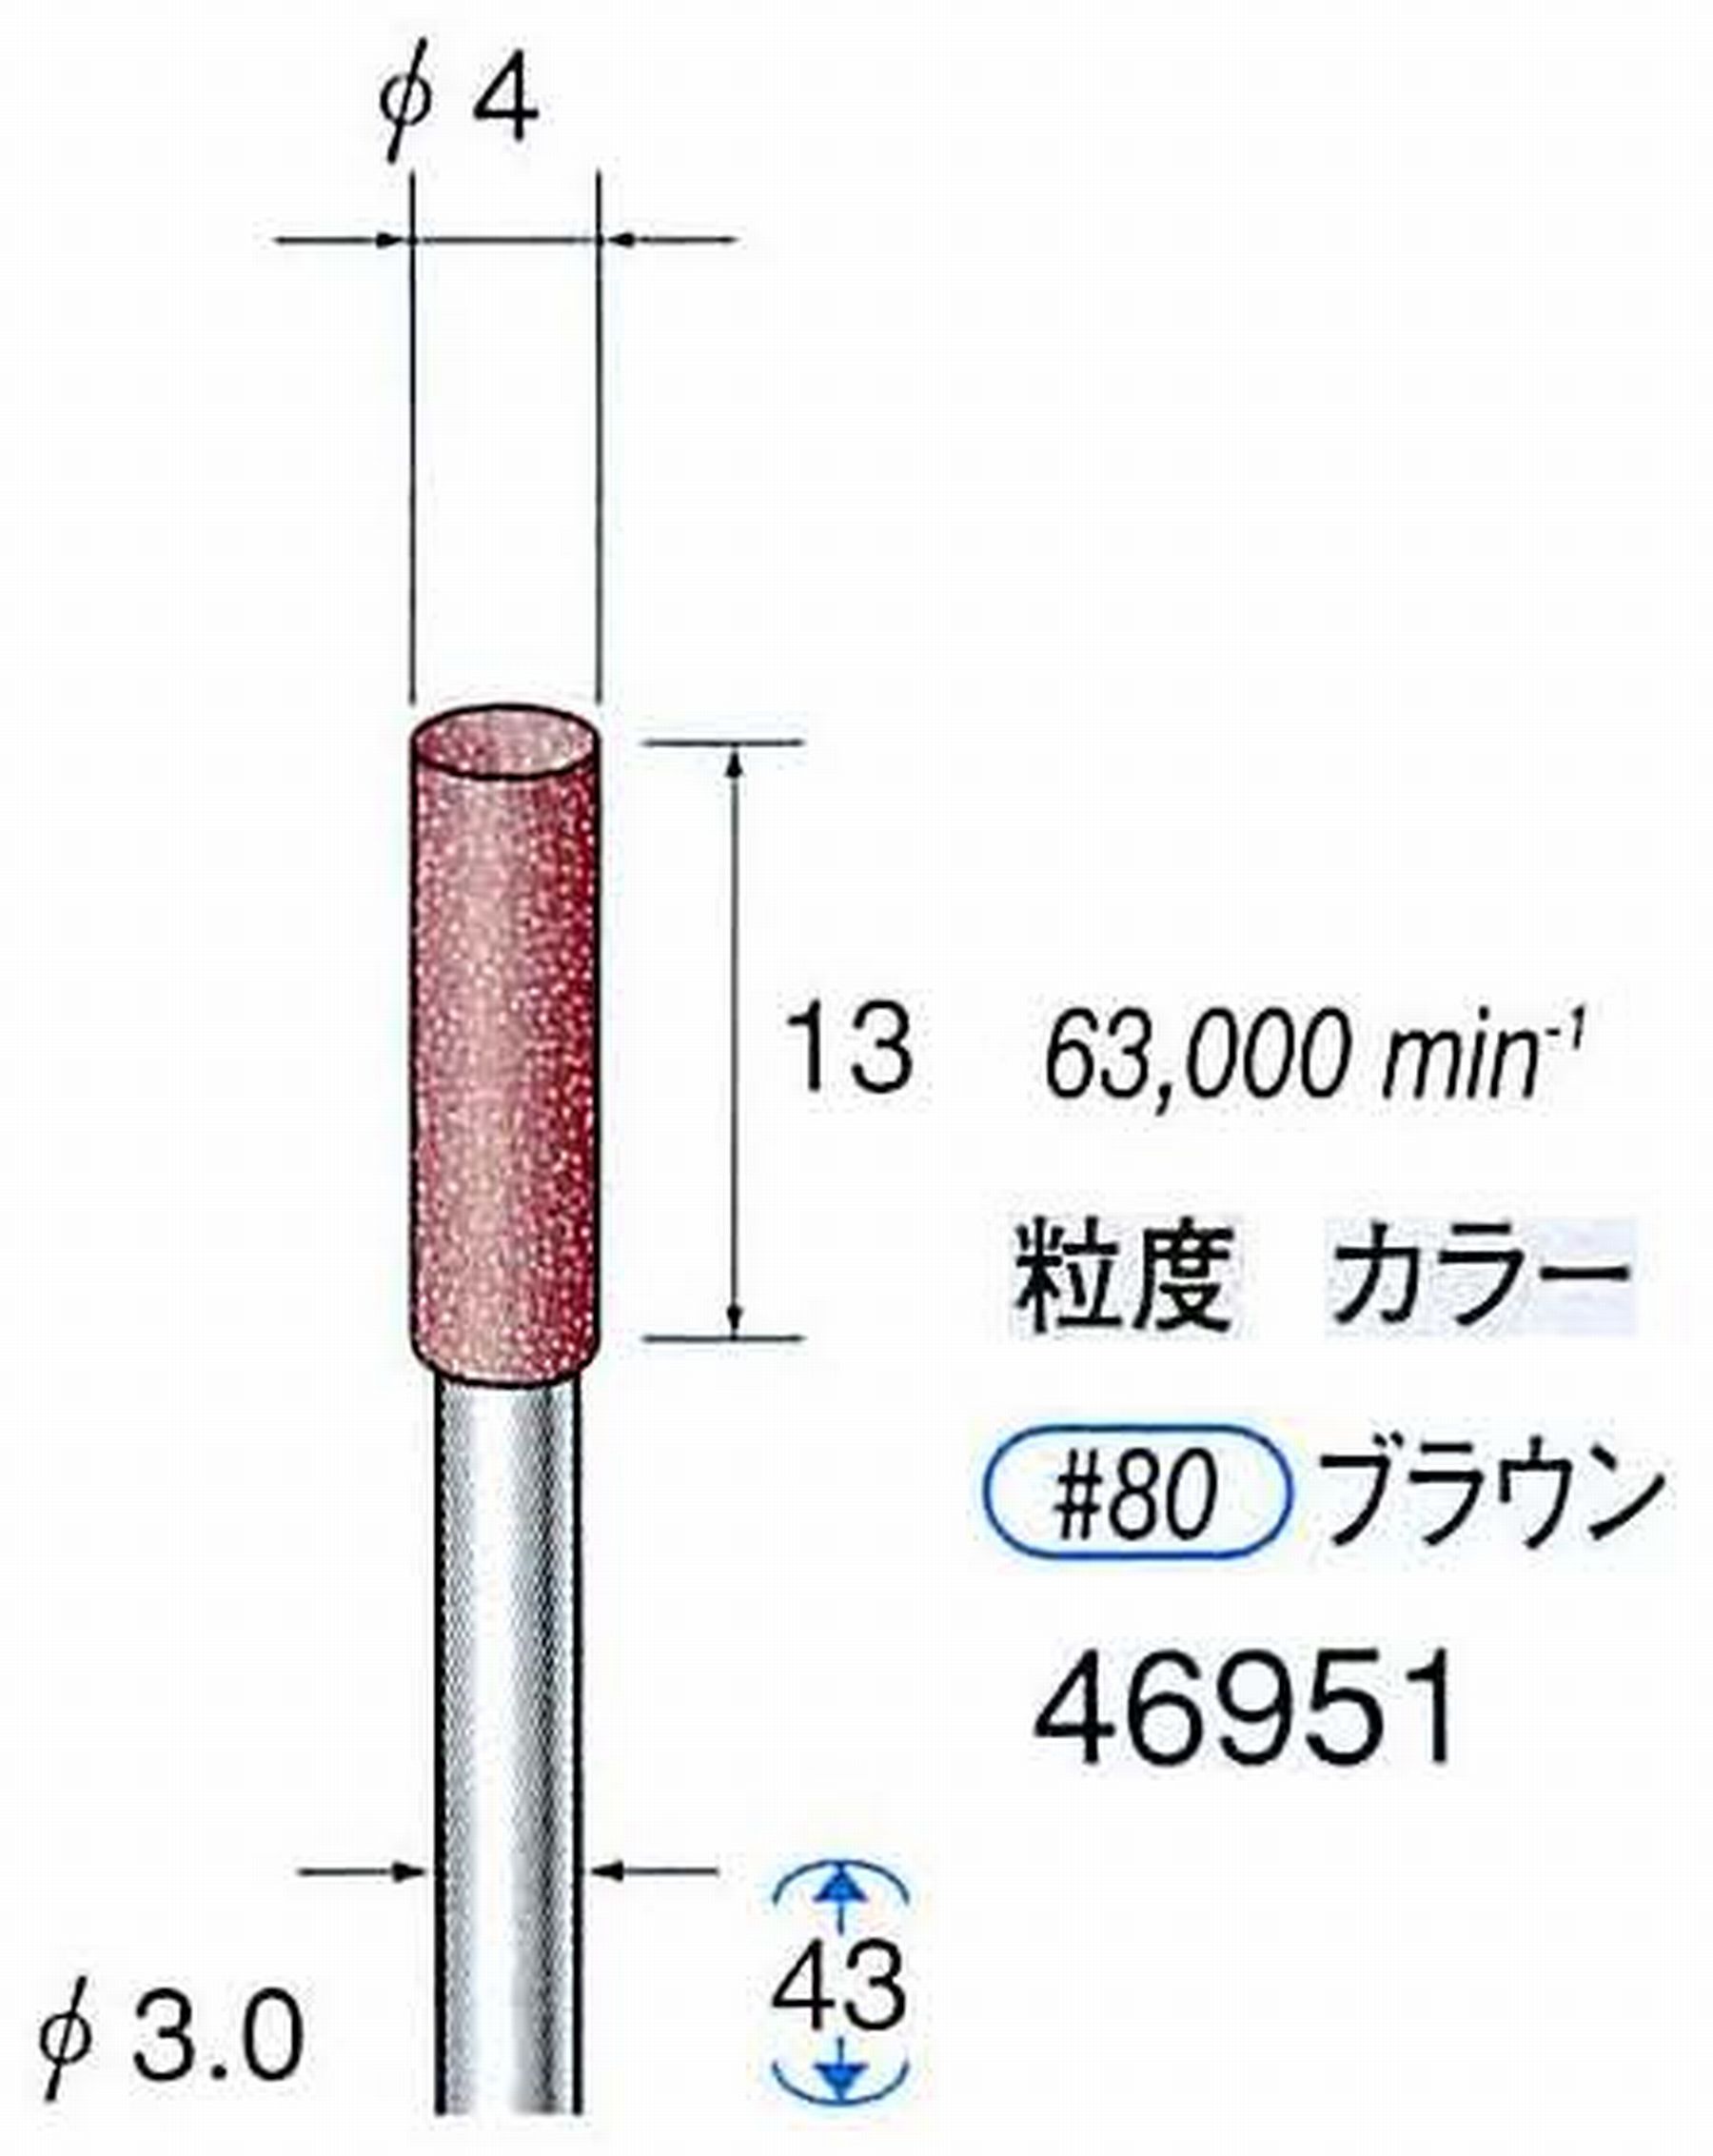 ナカニシ/NAKANISHI 高速回転用スペシャルゴム砥石(WA砥粒)ゴム質の硬さ：ミディアム 軸径(シャンク) φ3.0mm 46951